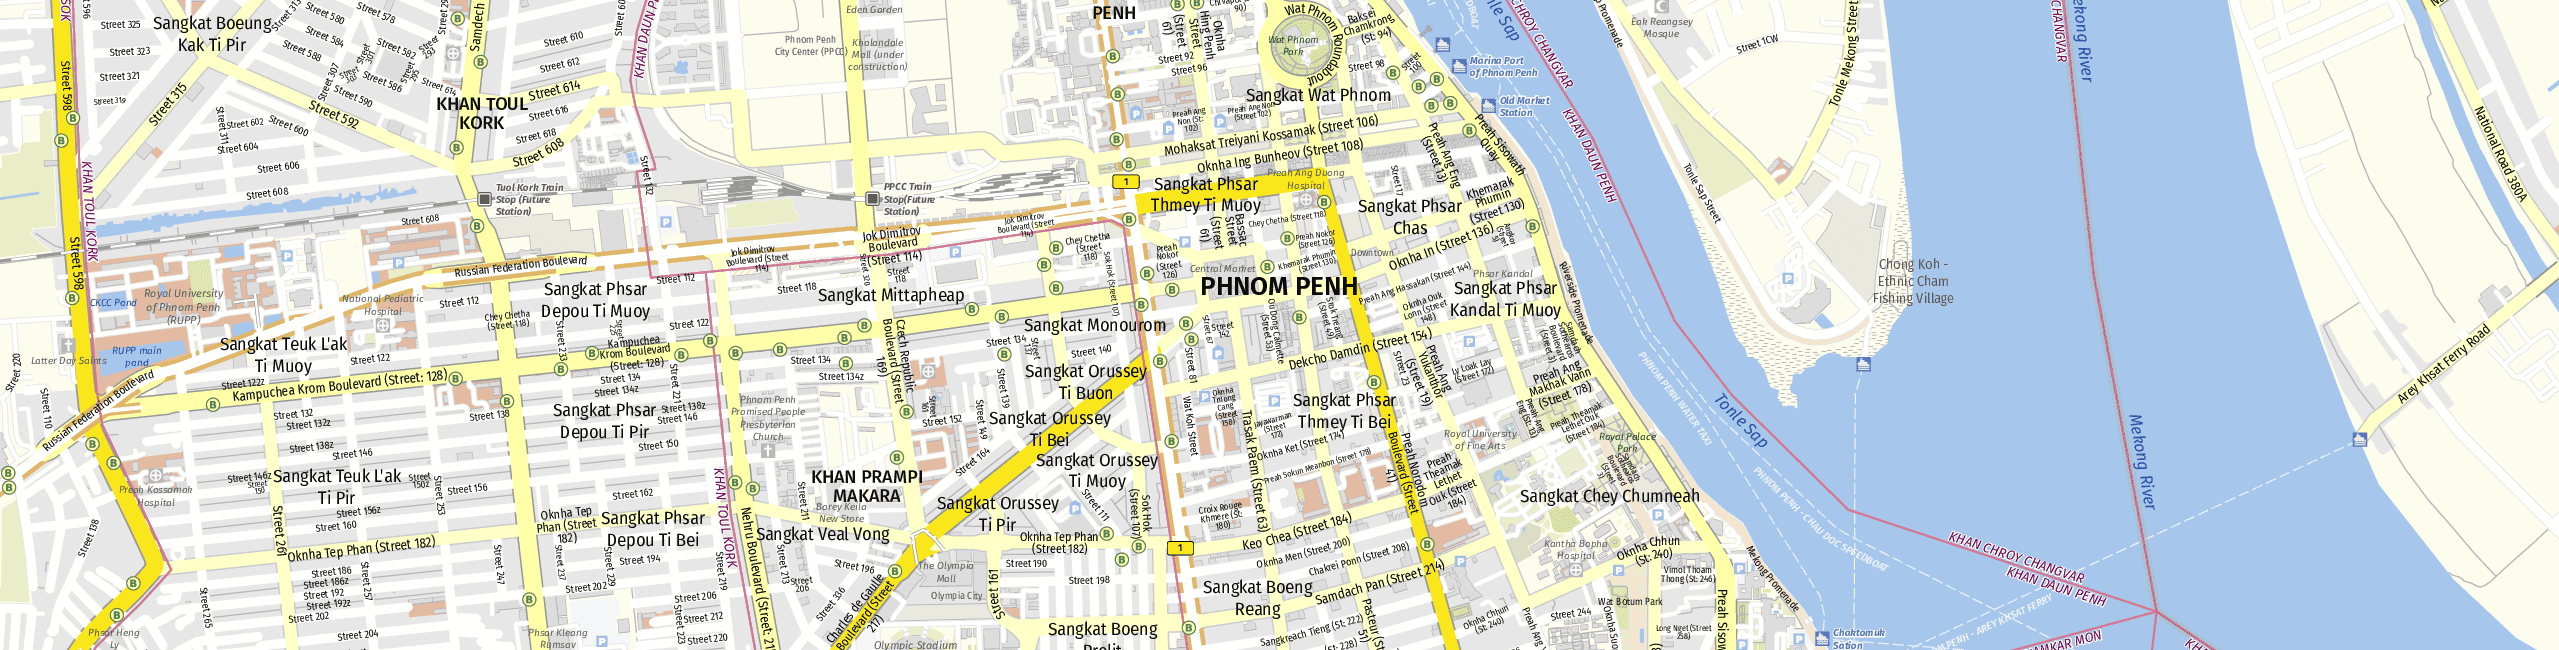 Stadtplan Phnom Penh zum Downloaden.